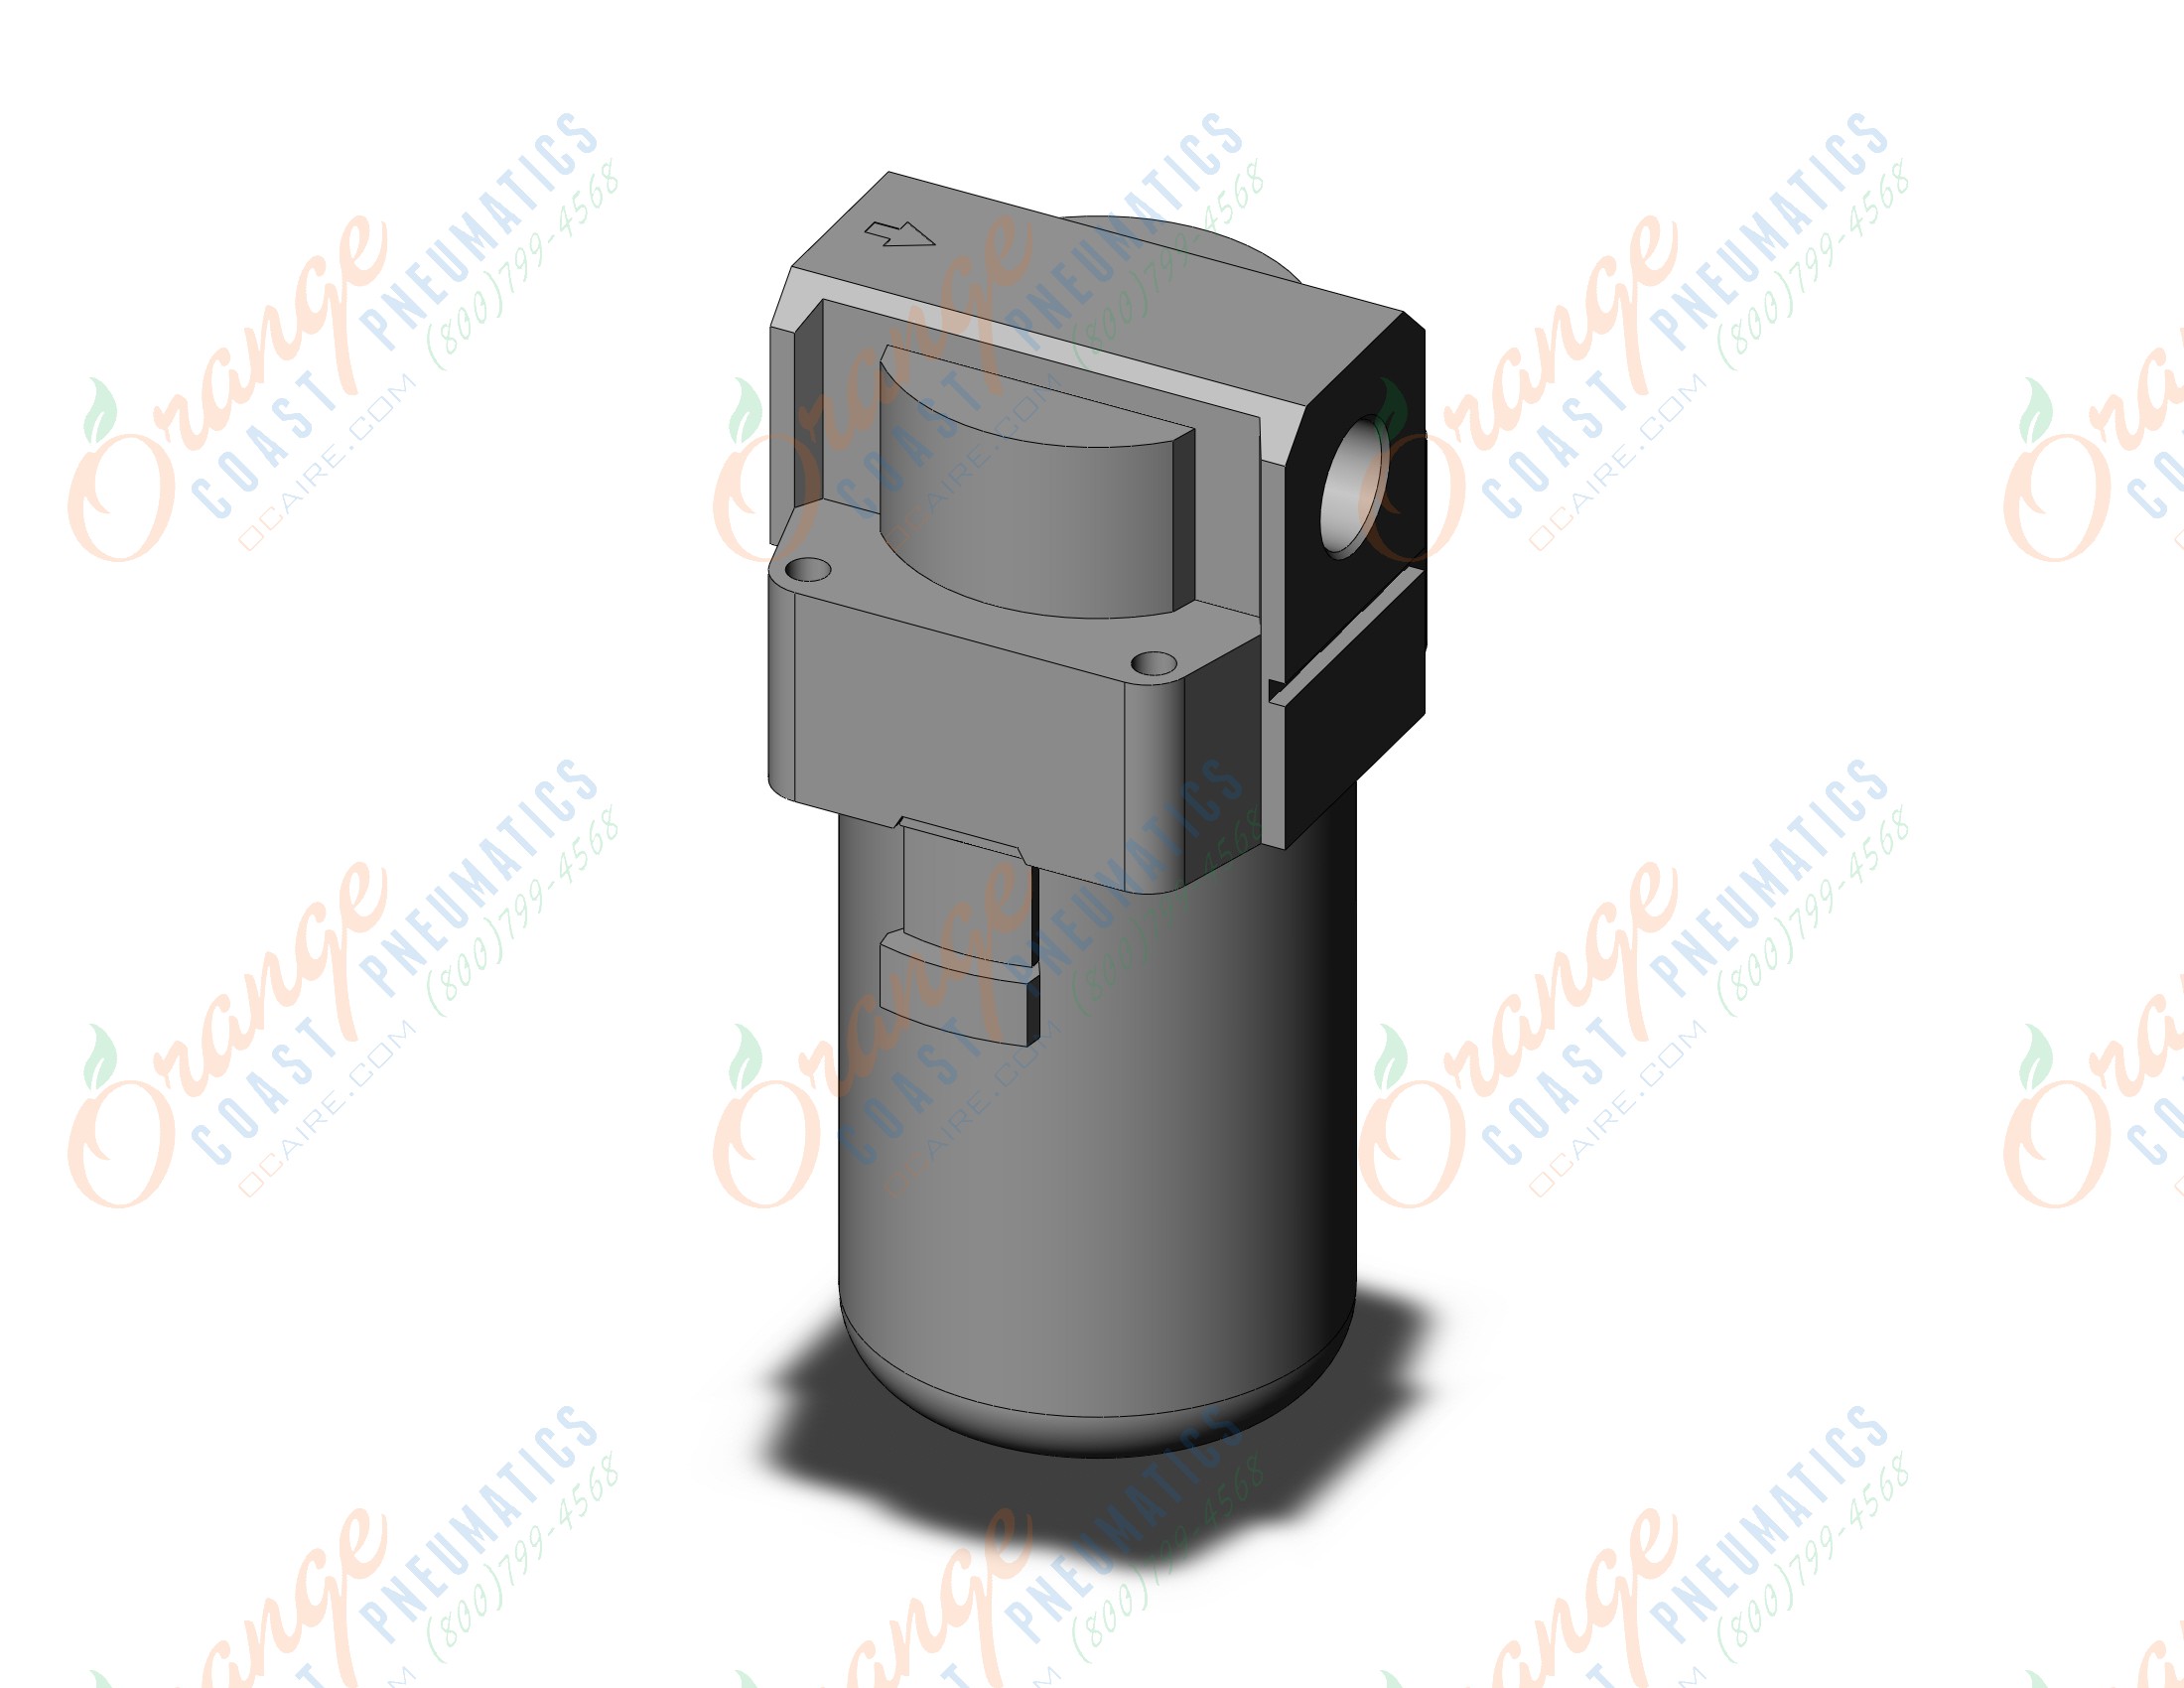 SMC AFJ40-03-40-S-6 vacuum filter, VACUUM FILTER